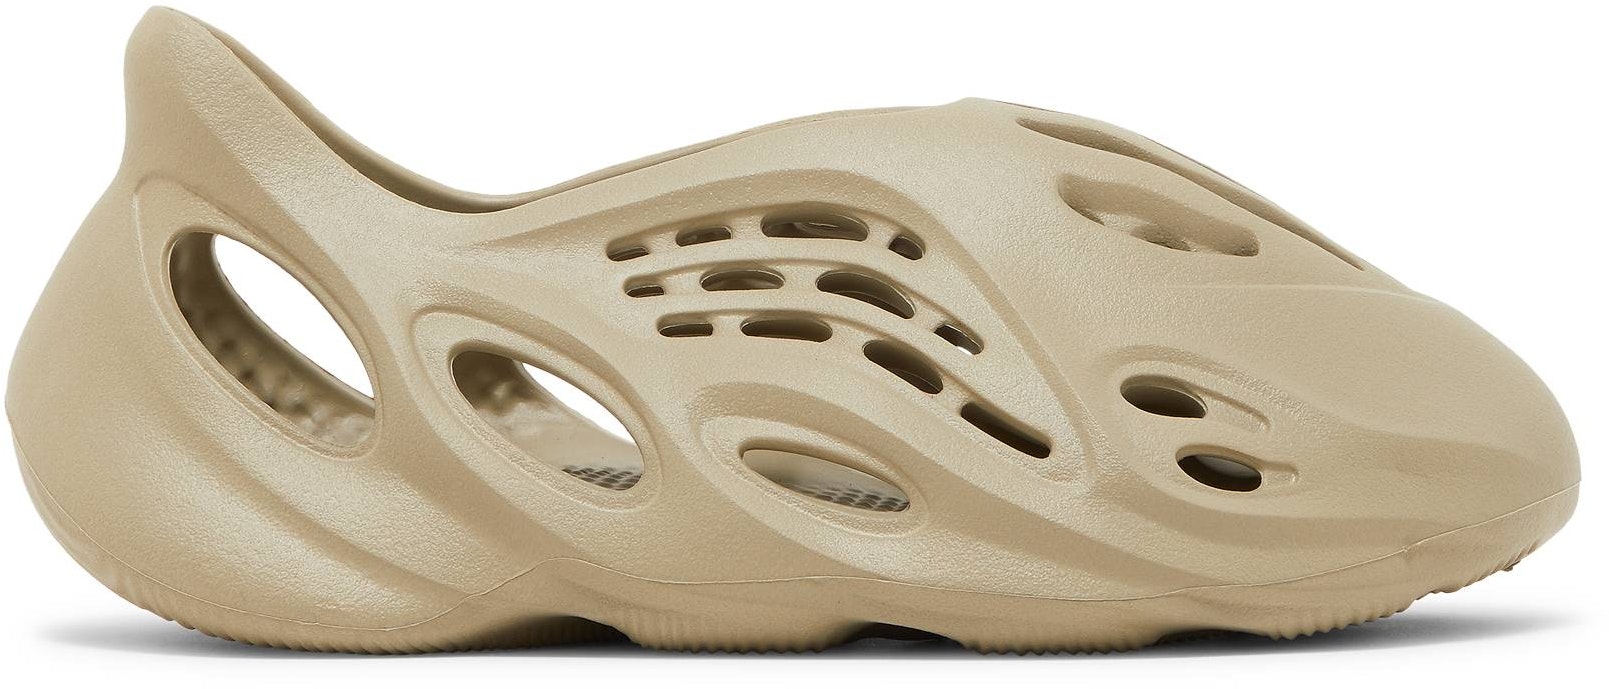 adidas Yeezy Foam Runner 'Stone Salt' GV6840 - GV6840 - Novelship